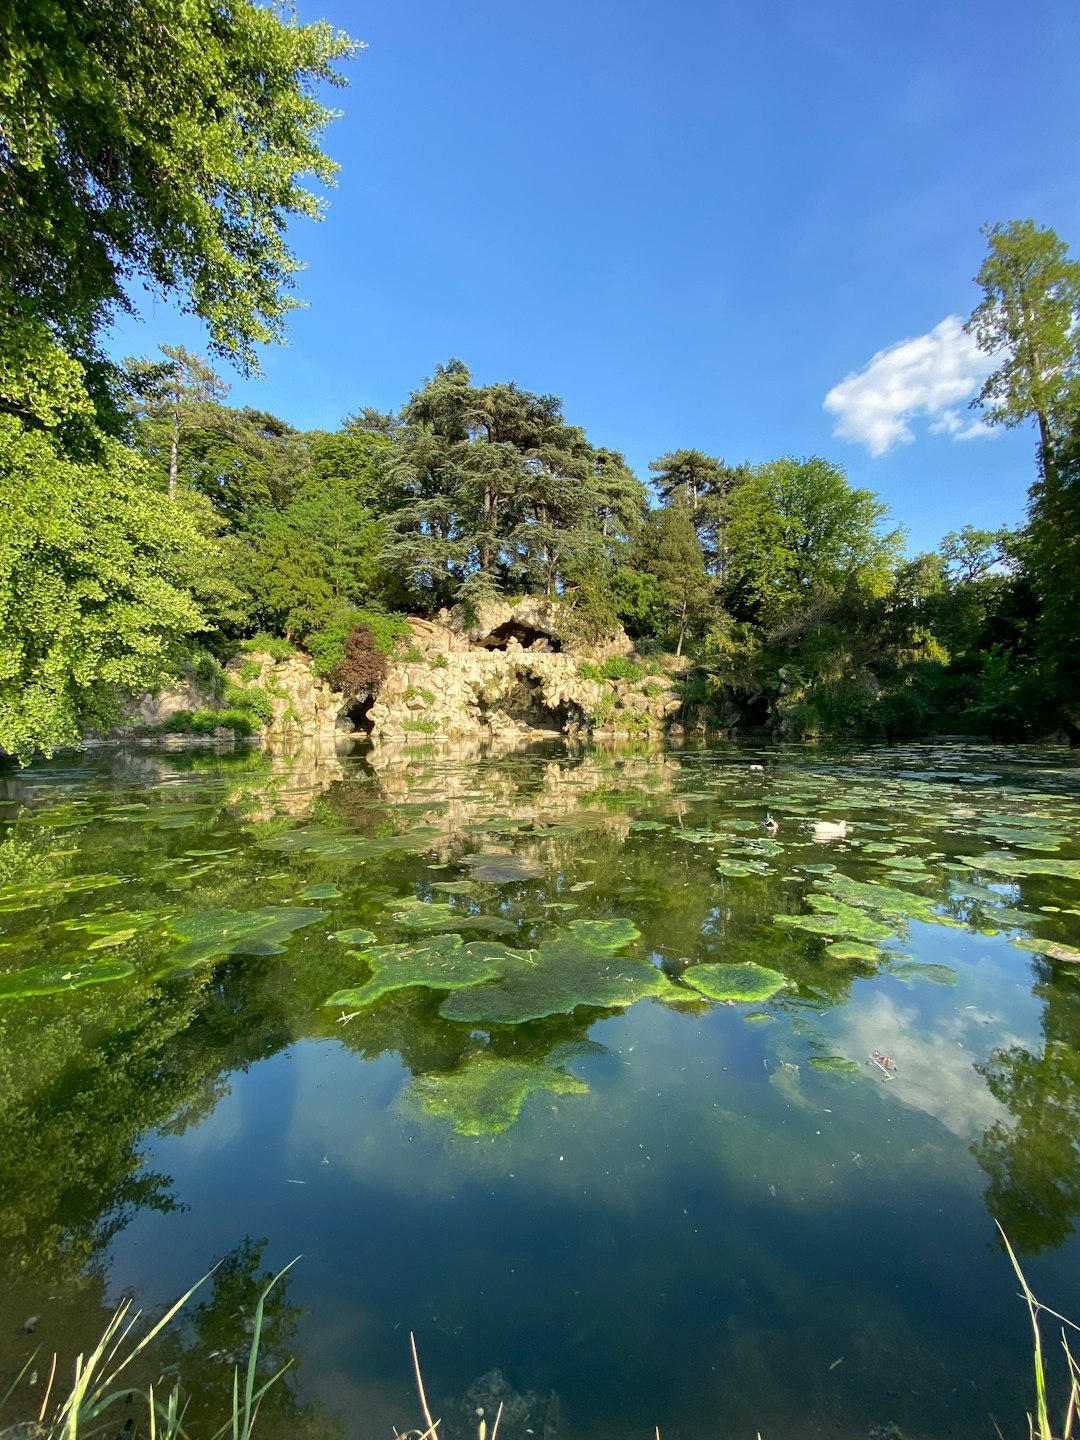 Nature reserve photo spot Bois de Boulogne Versailles